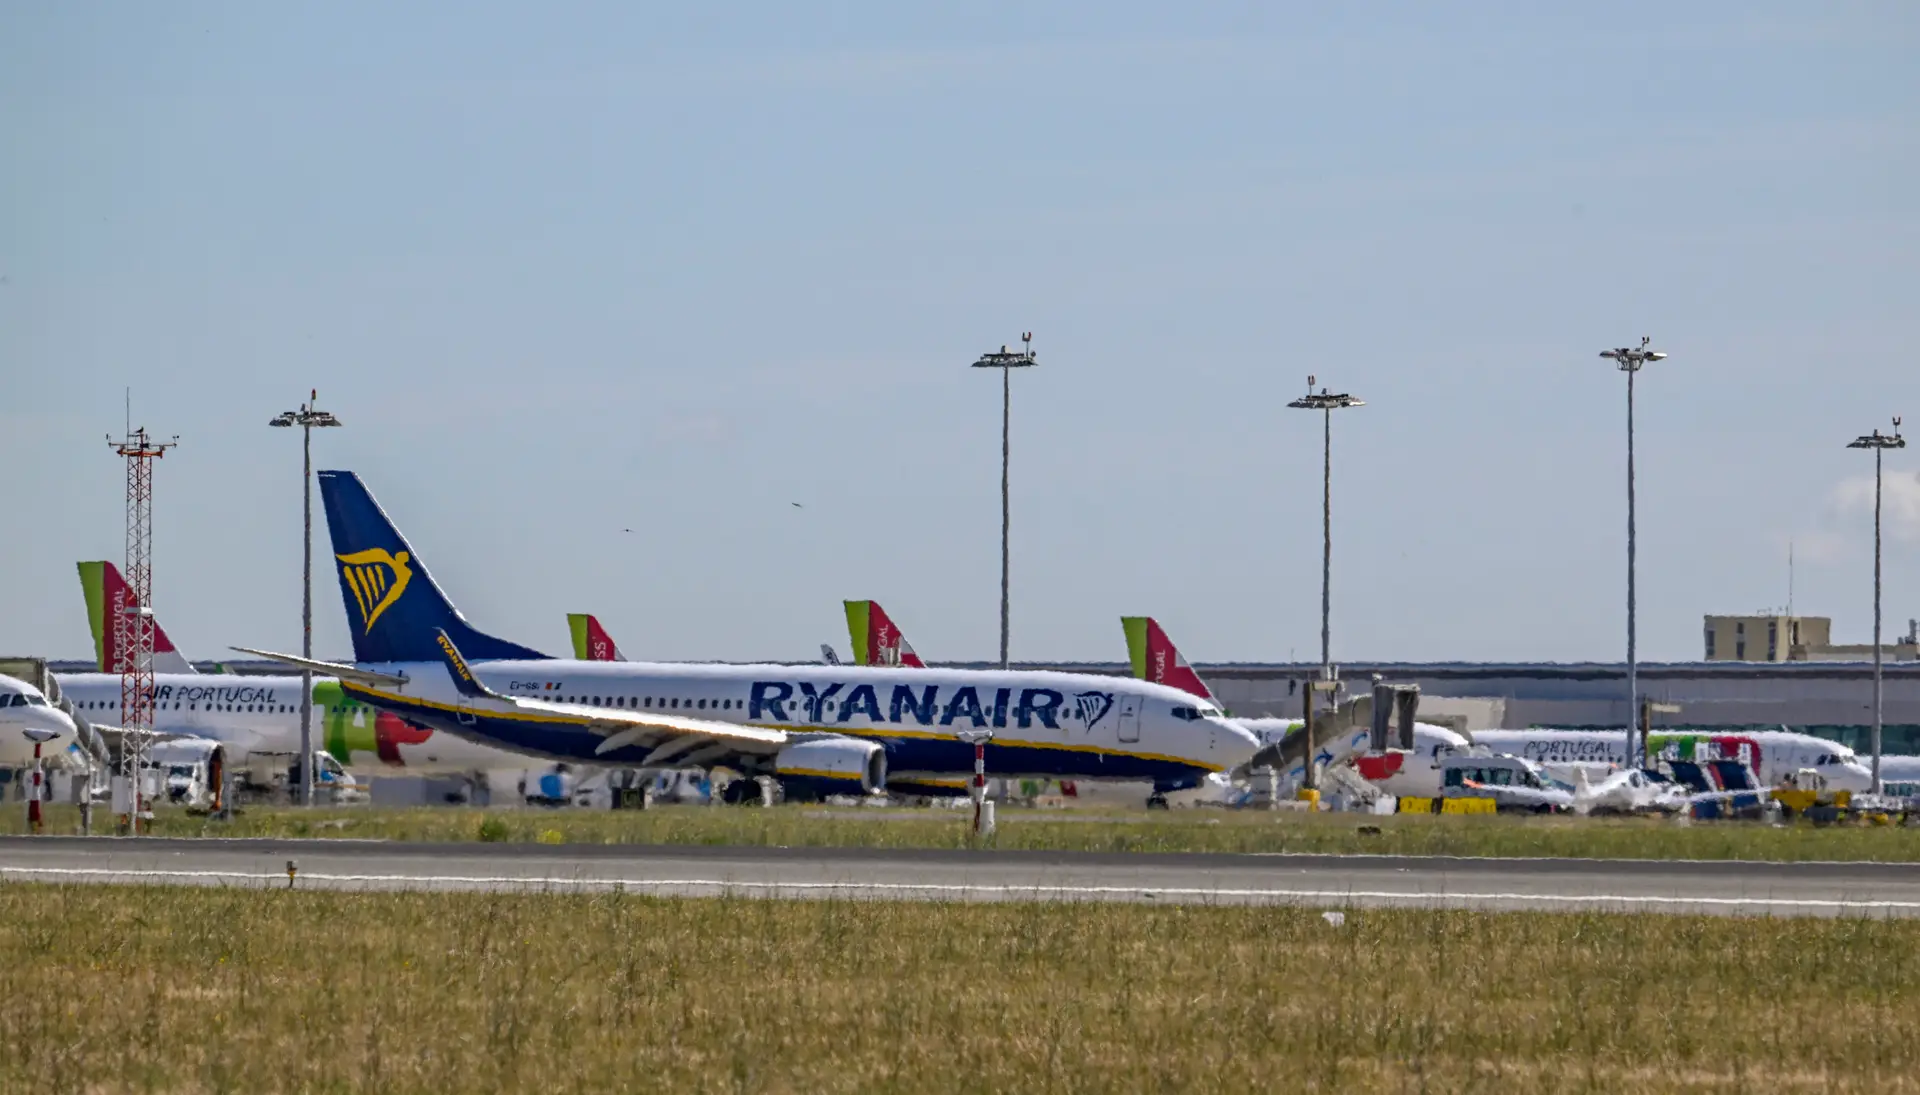 Novo centro de treinos da Ryanair em Portugal? É “cada vez mais provável”, diz presidente executivo